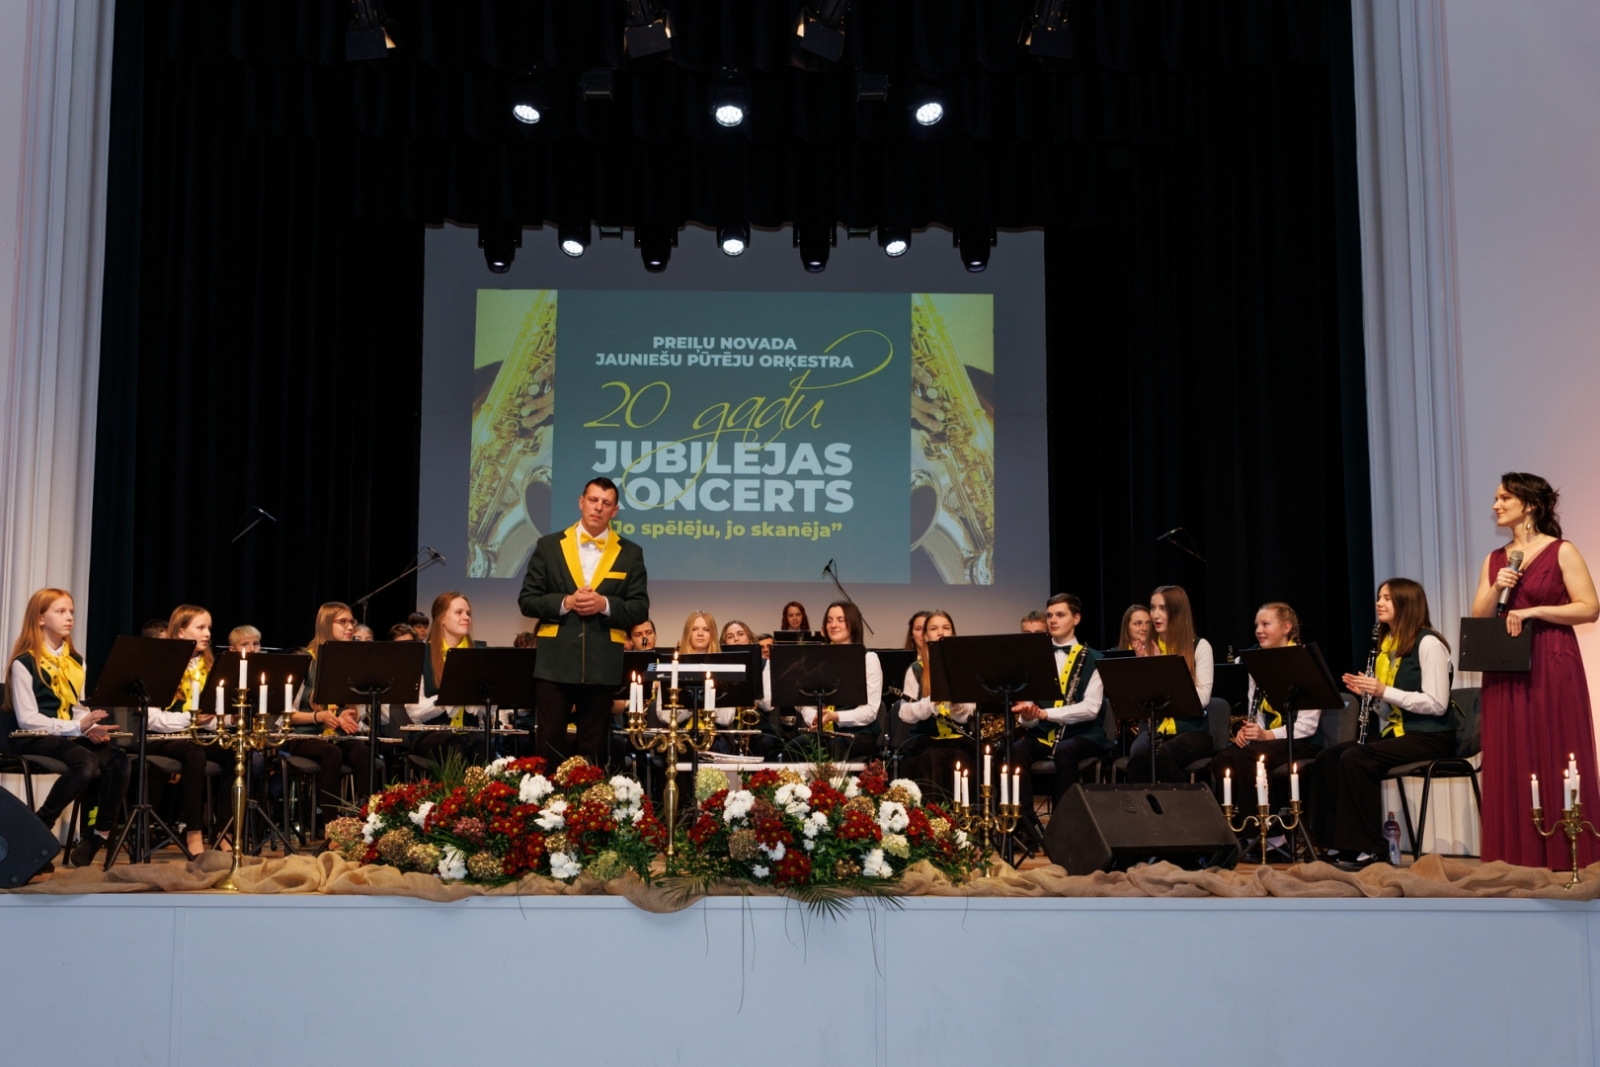 Preiļu novada Jauniešu pūtēju orķestra 20 gadu jubilejas koncerts "Jo spēlēju, jo skanēja"